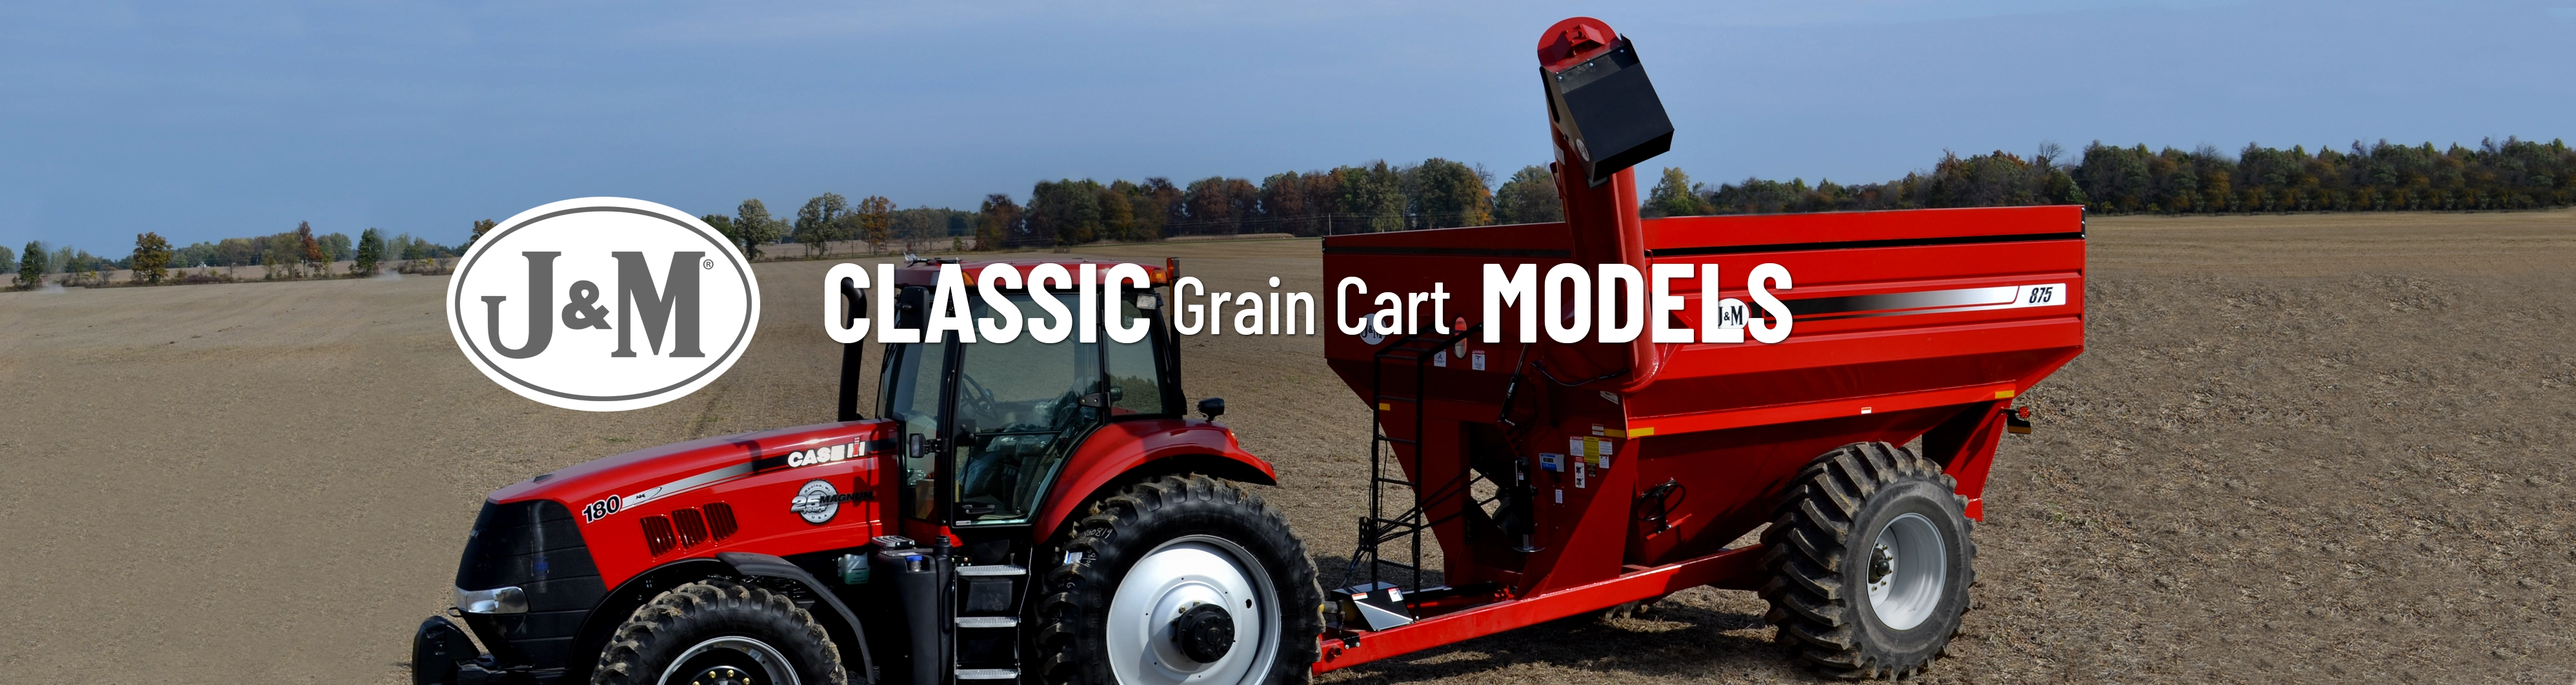 Classic Grain Cart Hero Image